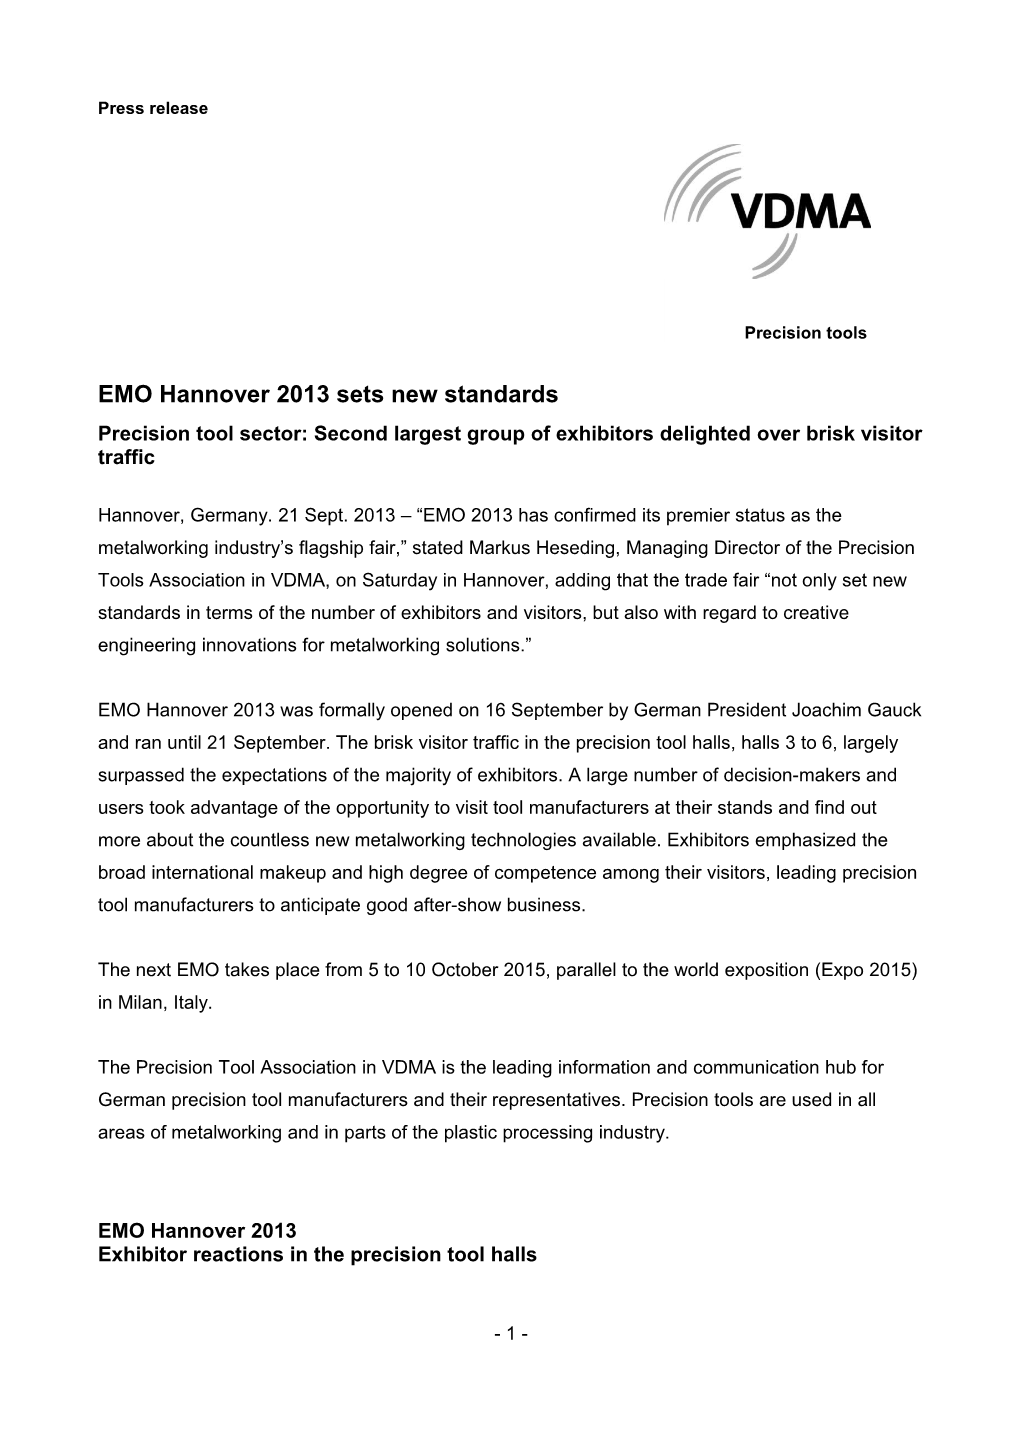 EMO Hannover 2013 Sets New Standards